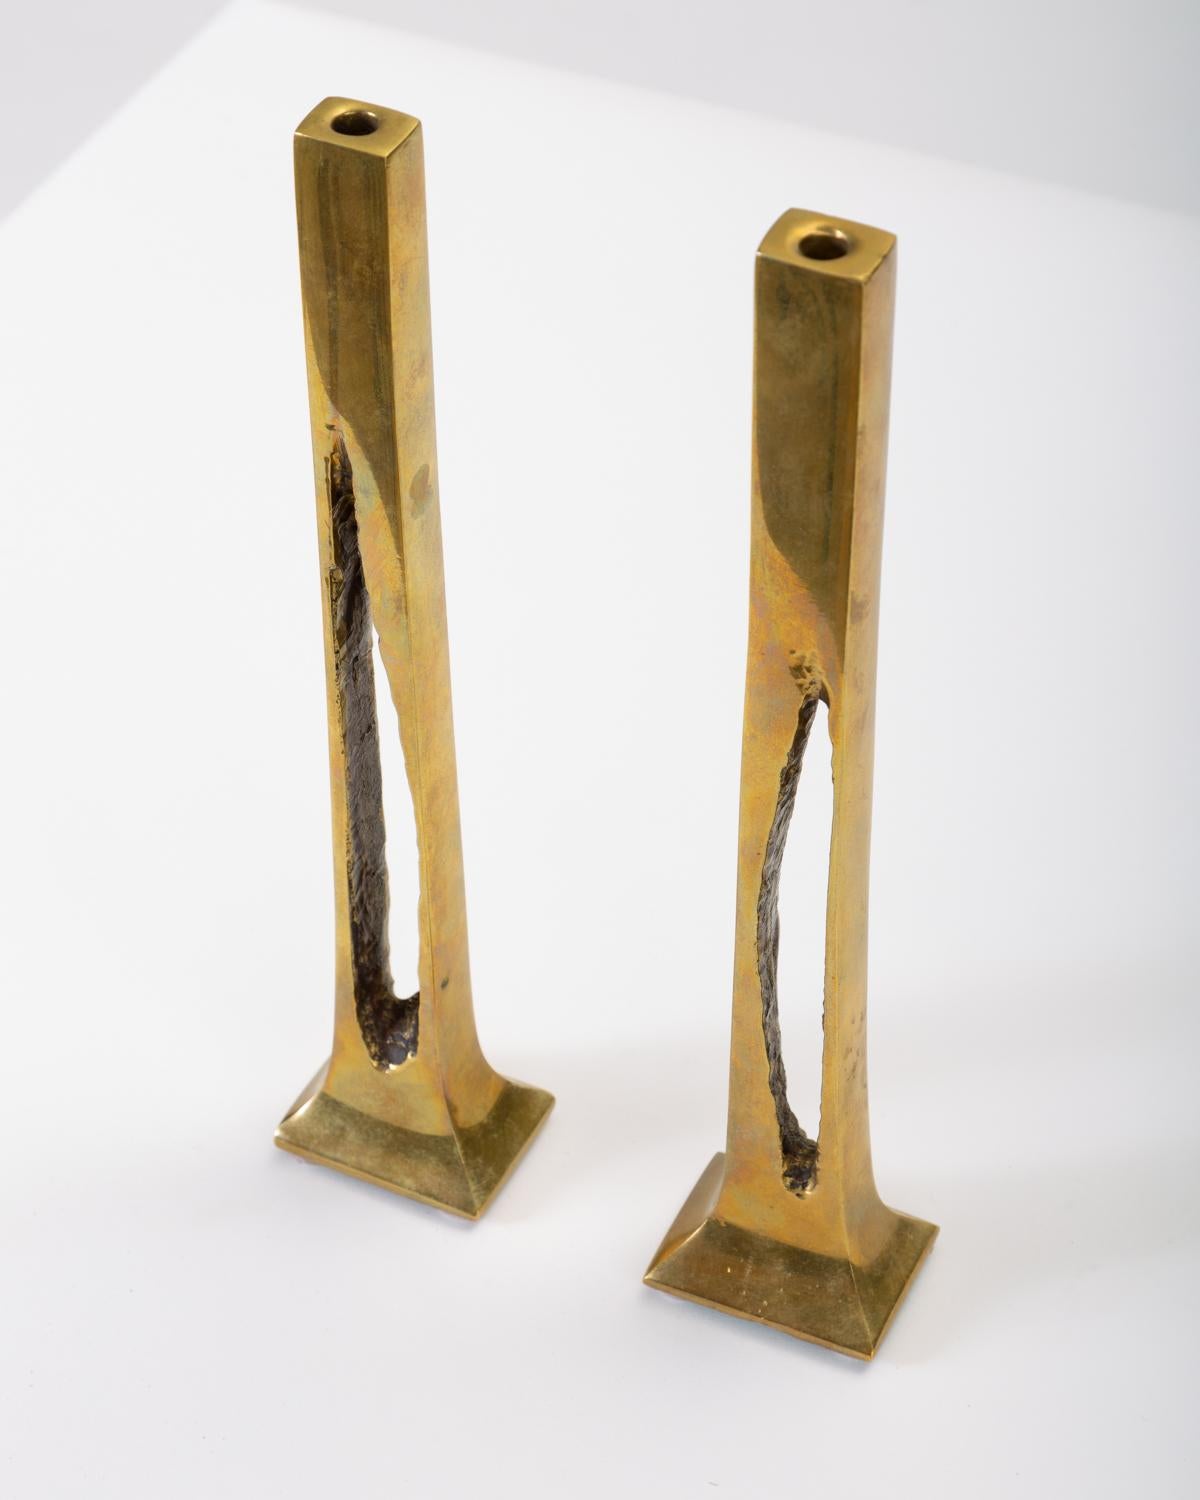 Belgian Modernist Candlesticks in Cast Brass (Messing)